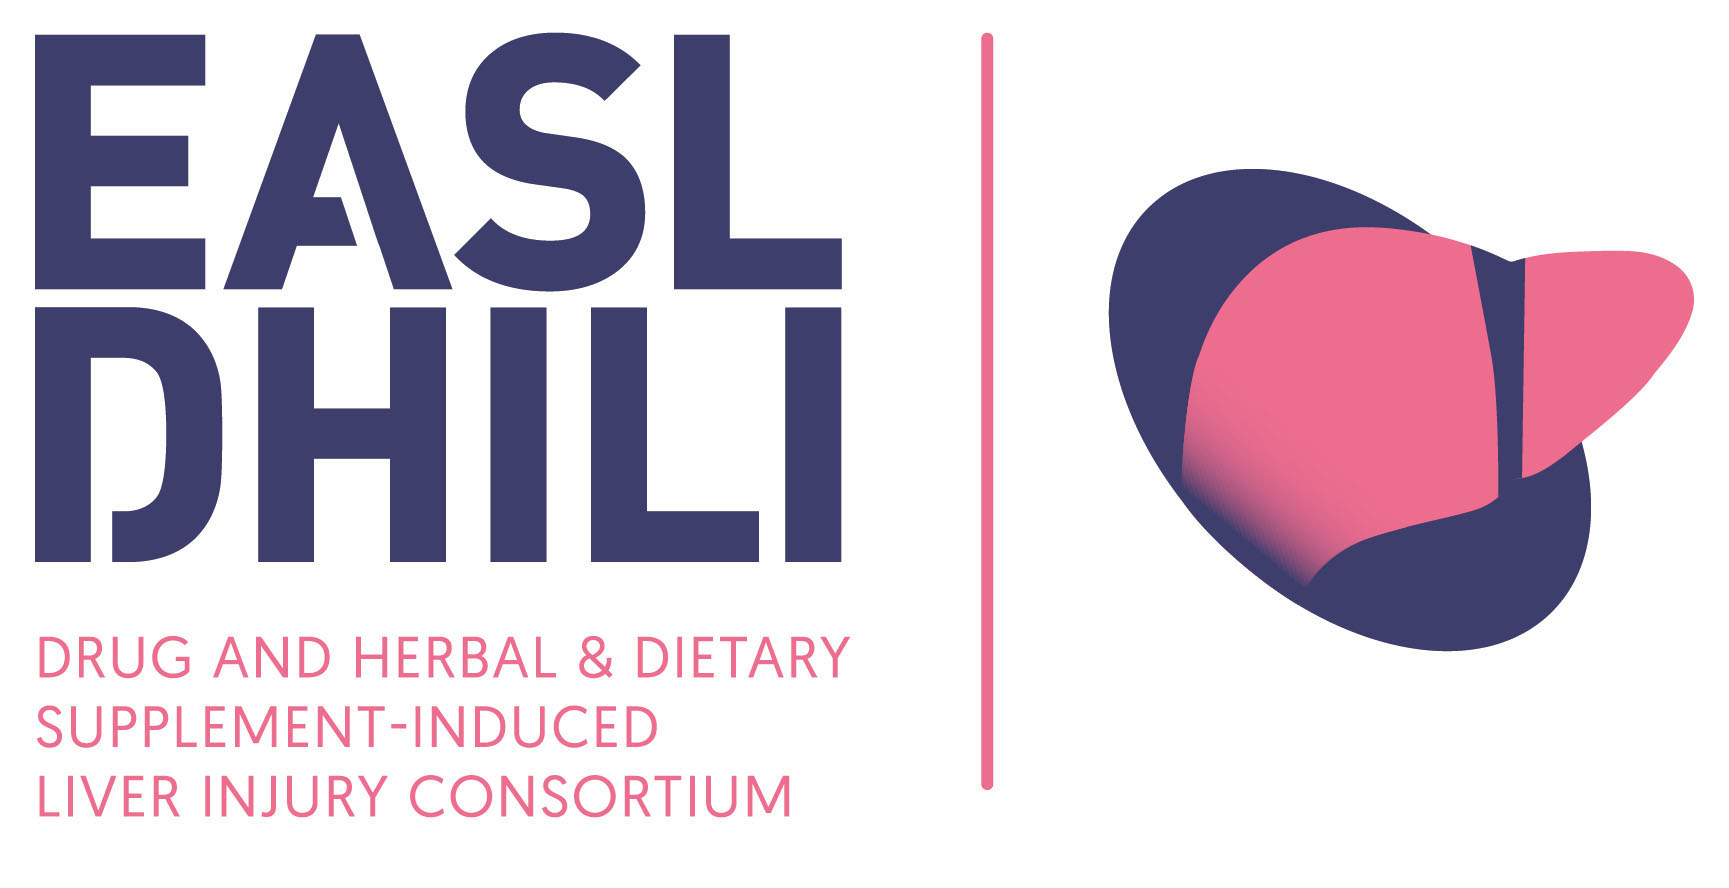 EASL DHILI Consortium